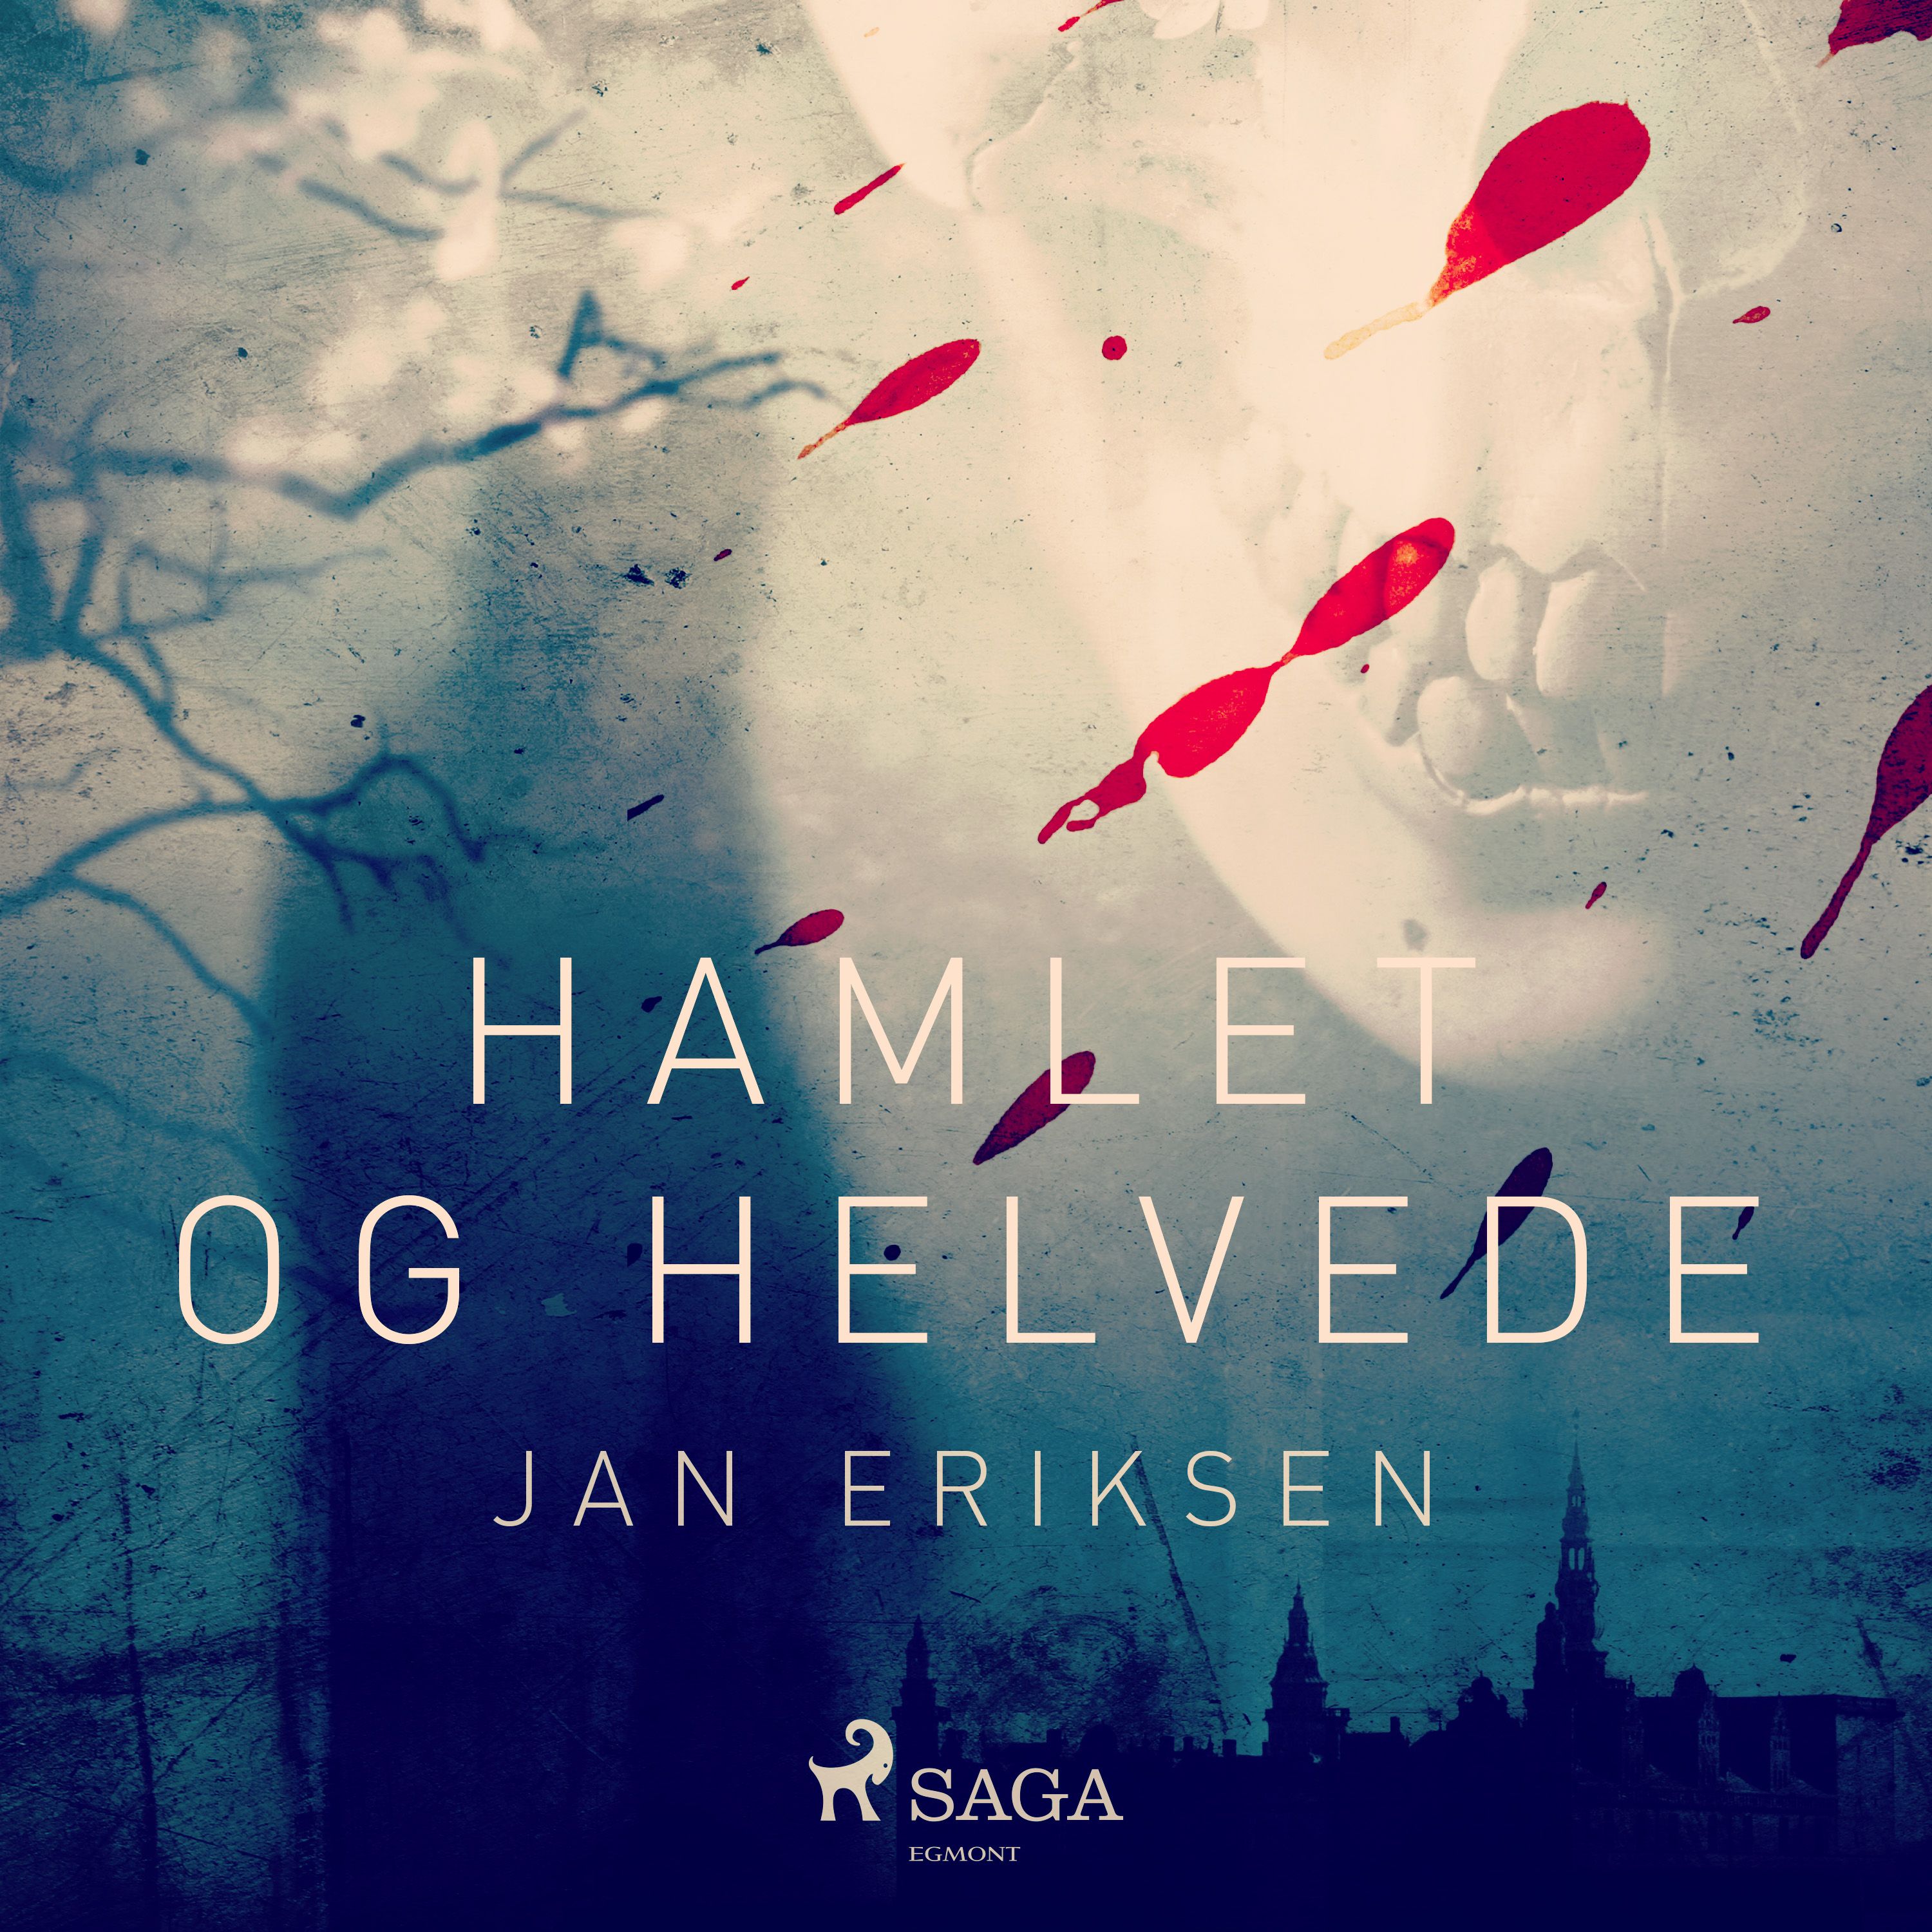 Hamlet og helvede, ljudbok av Jan Eriksen